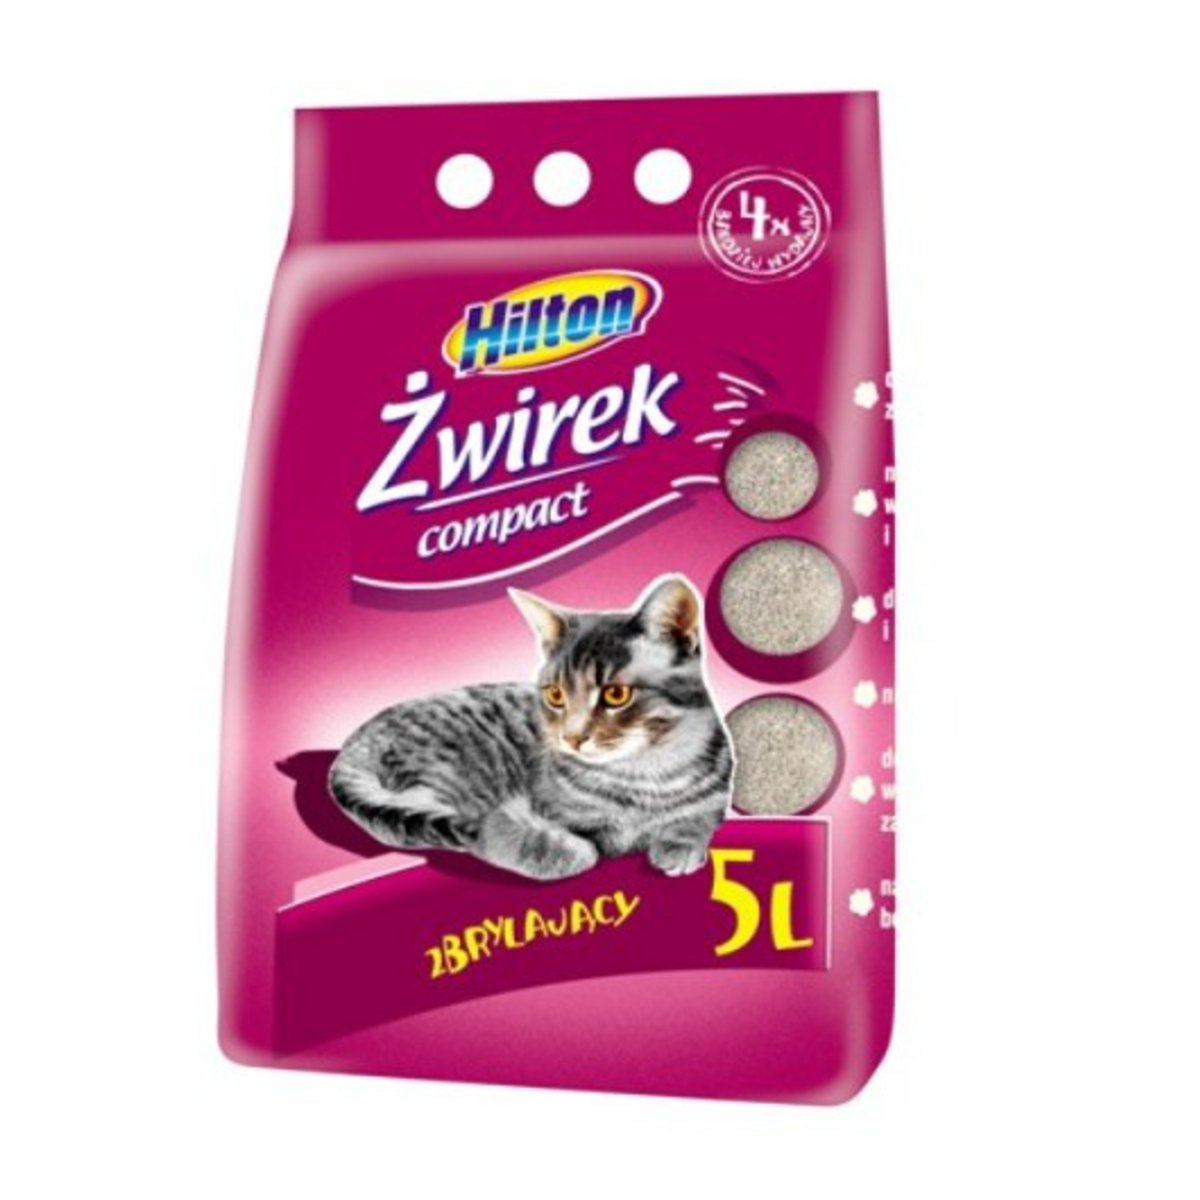 Zdjęcia - Żwirki dla kotów HILTON Żwirek bentonitowy zbrylający  Compact, 5 l 